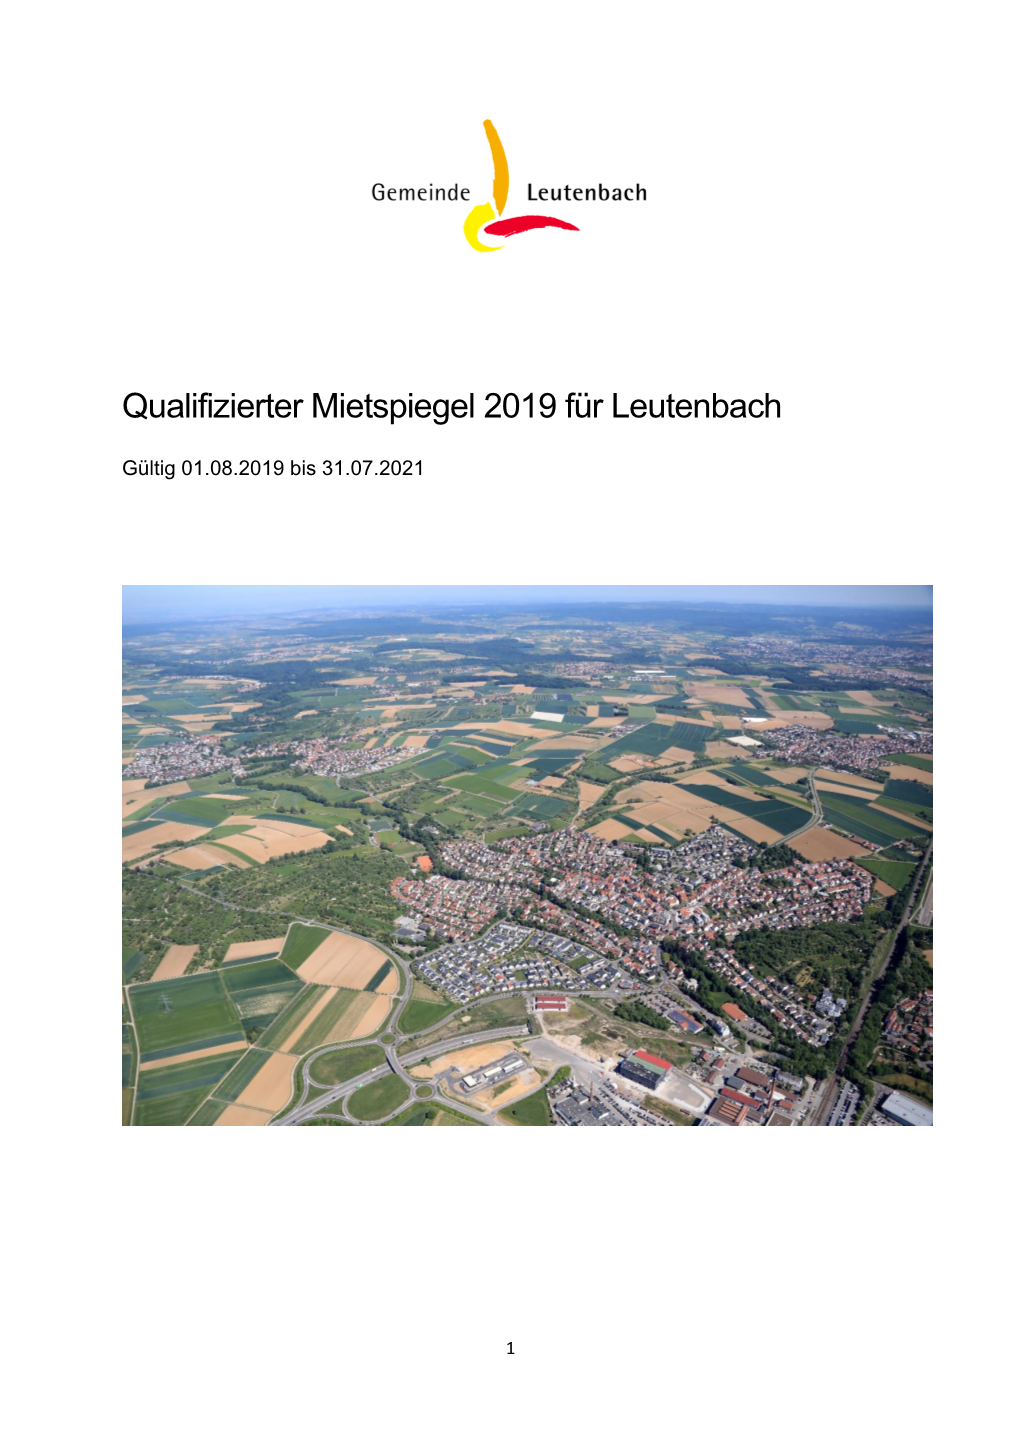 Qualifizierter Mietspiegel 2019 Für Leutenbach